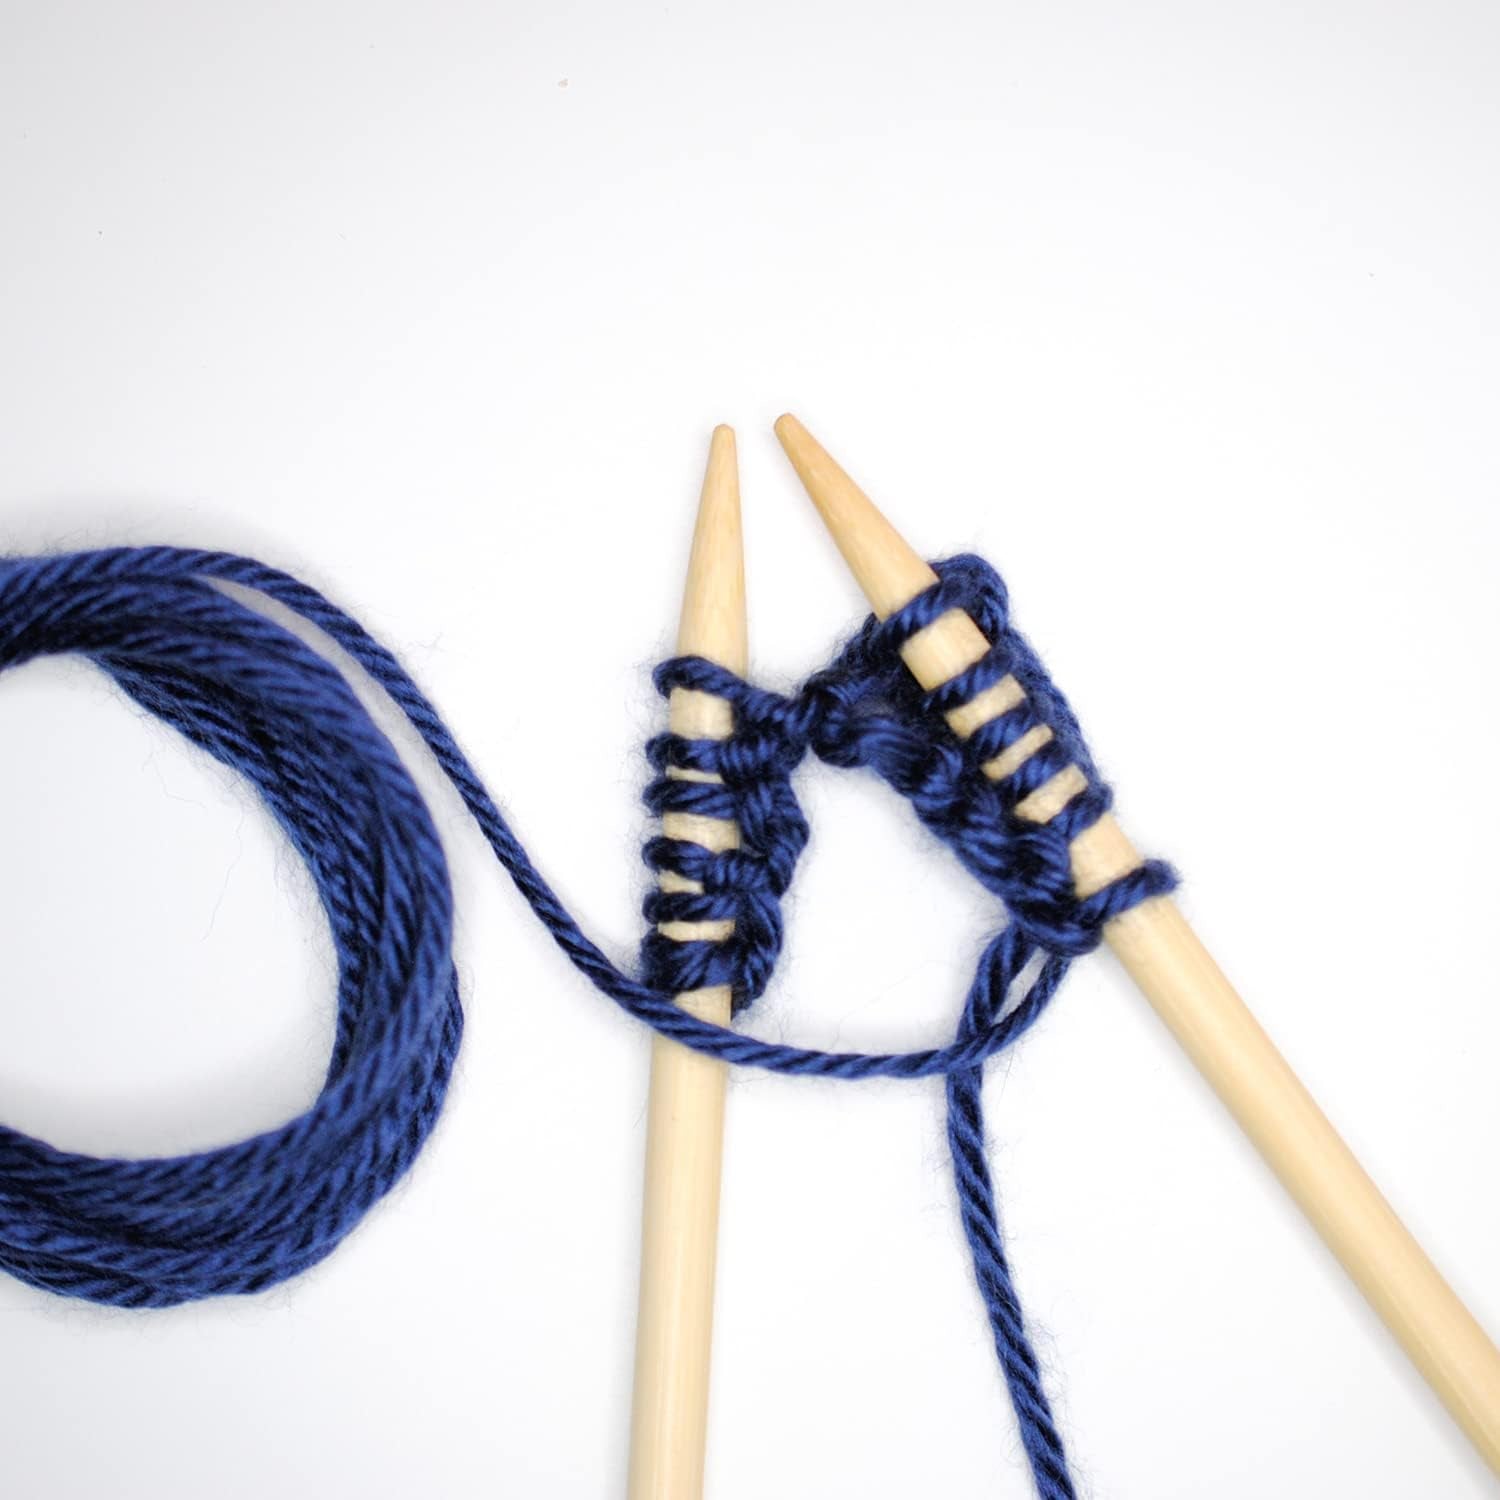 2 Pcs Bamboo Knitting Needles Set Straight Single Pointed Knitting Needle Length 14 Inch Knitting Supplies Knitting Needles for Beginners Handmade (8 Mm)